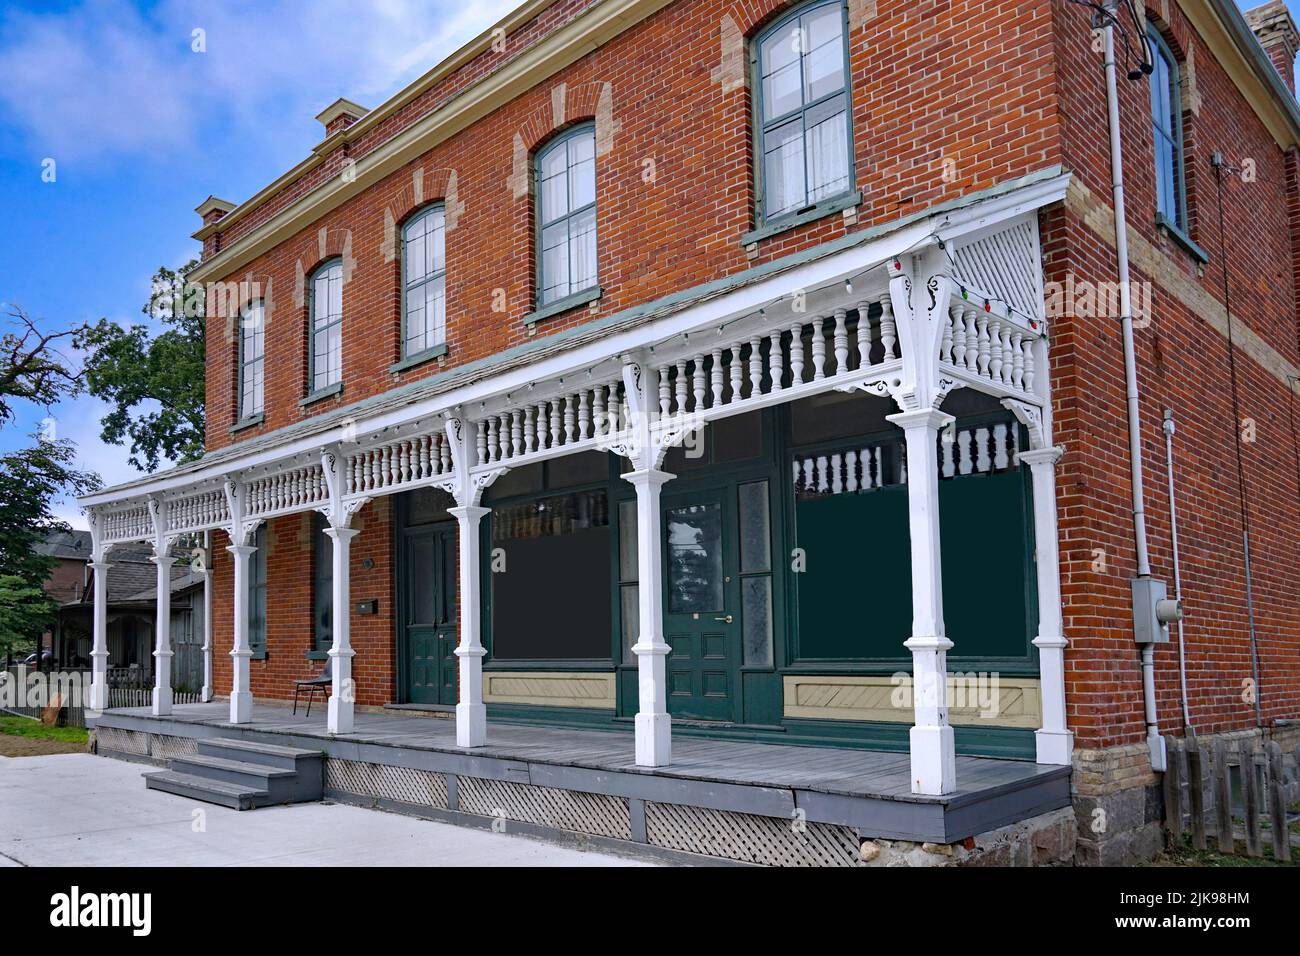 Antiguo edificio de ladrillo con porche frontal de ancho completo, originalmente una tienda rural de los años 1890s Foto de stock